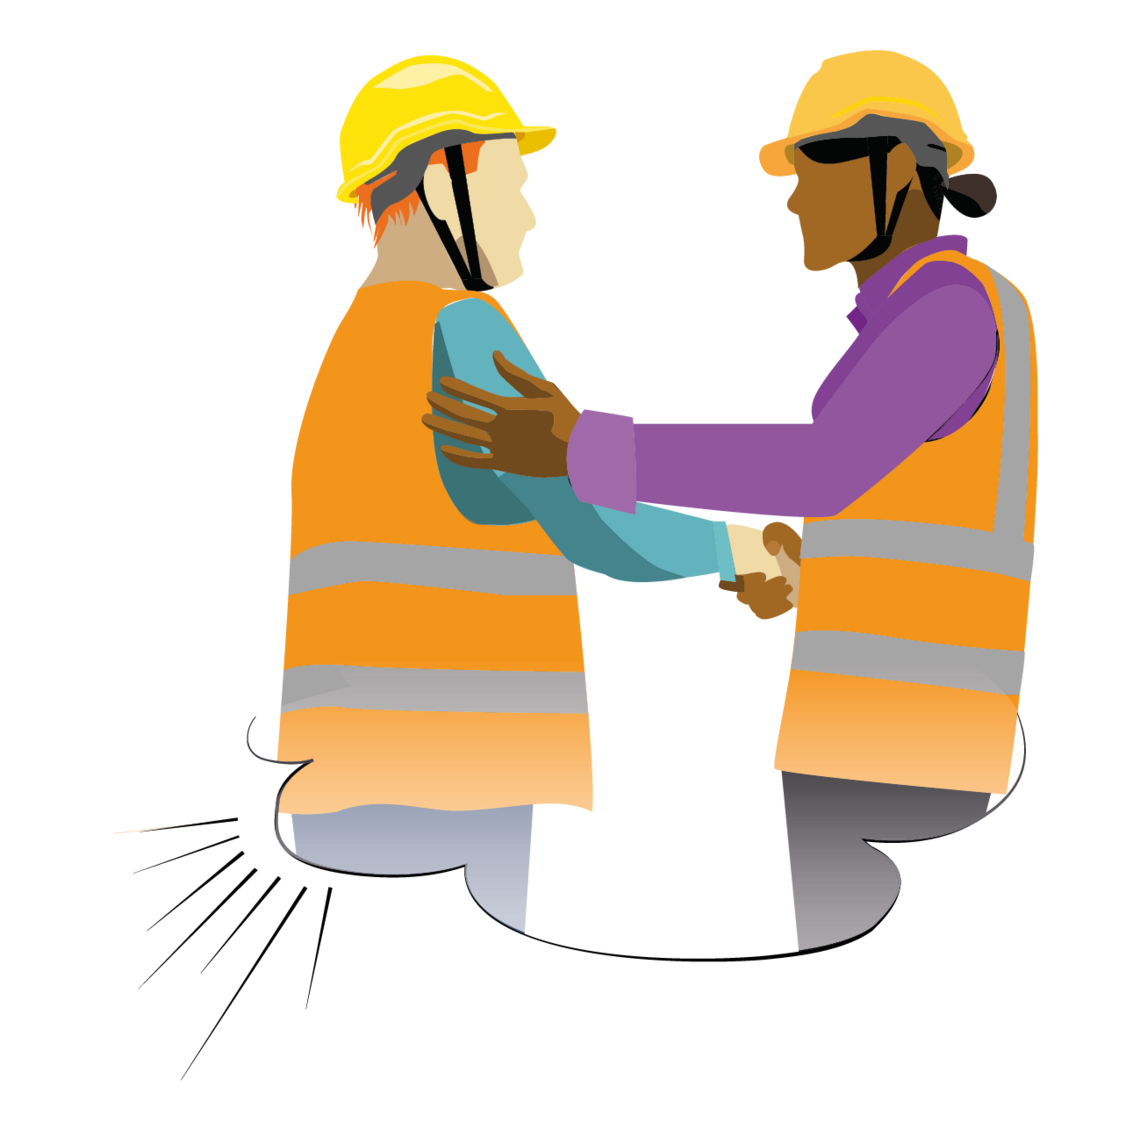 Illustration von zwei Bauarbeitern, die sich die Hände reichen.
